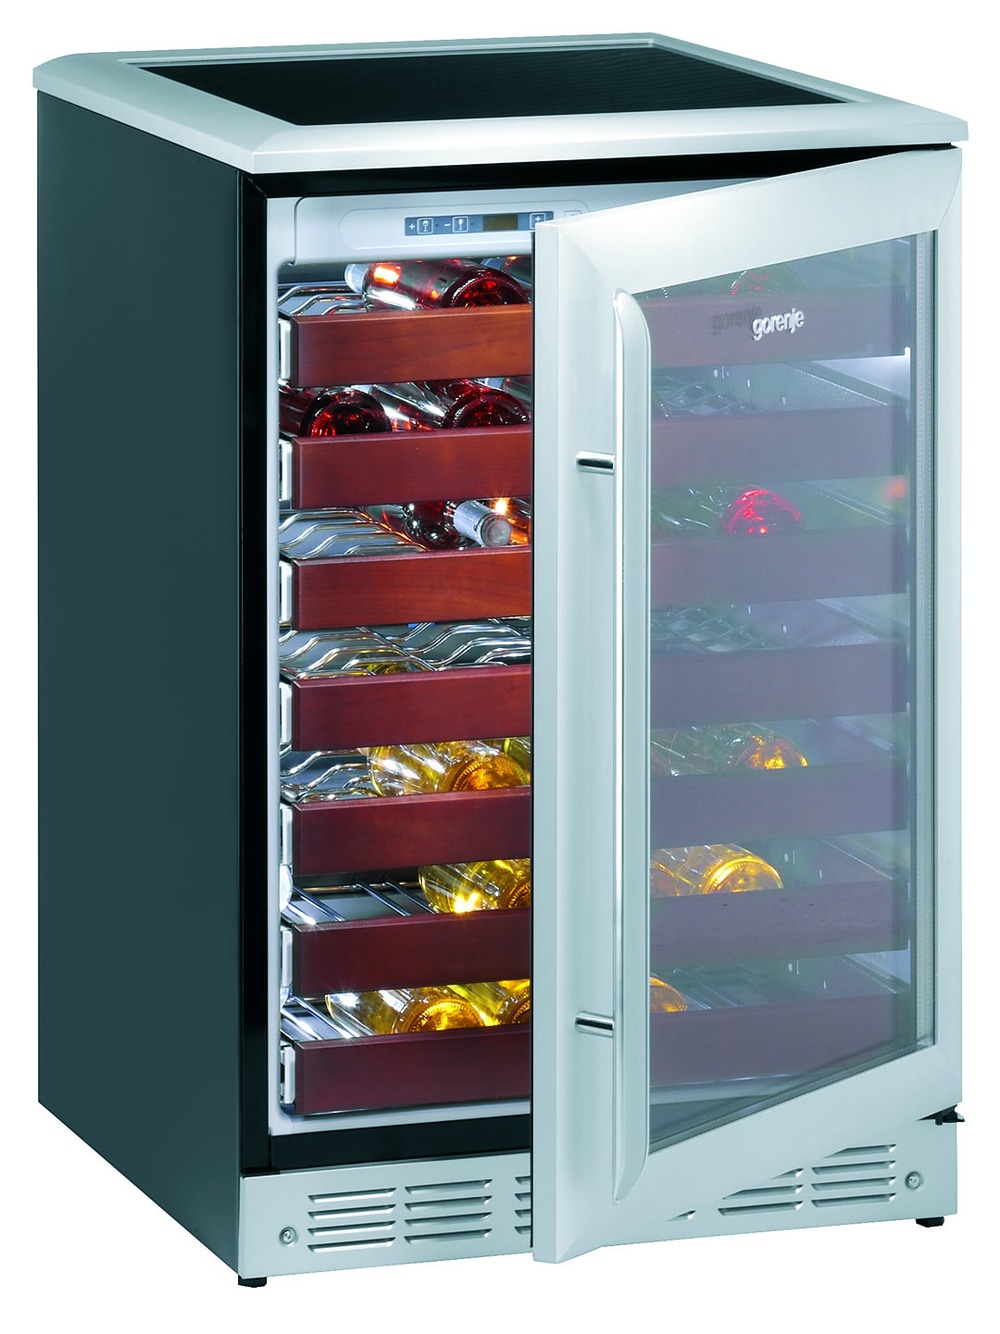 XWC660EF - Prisvenligt vinkøleskab set til 9.110,-